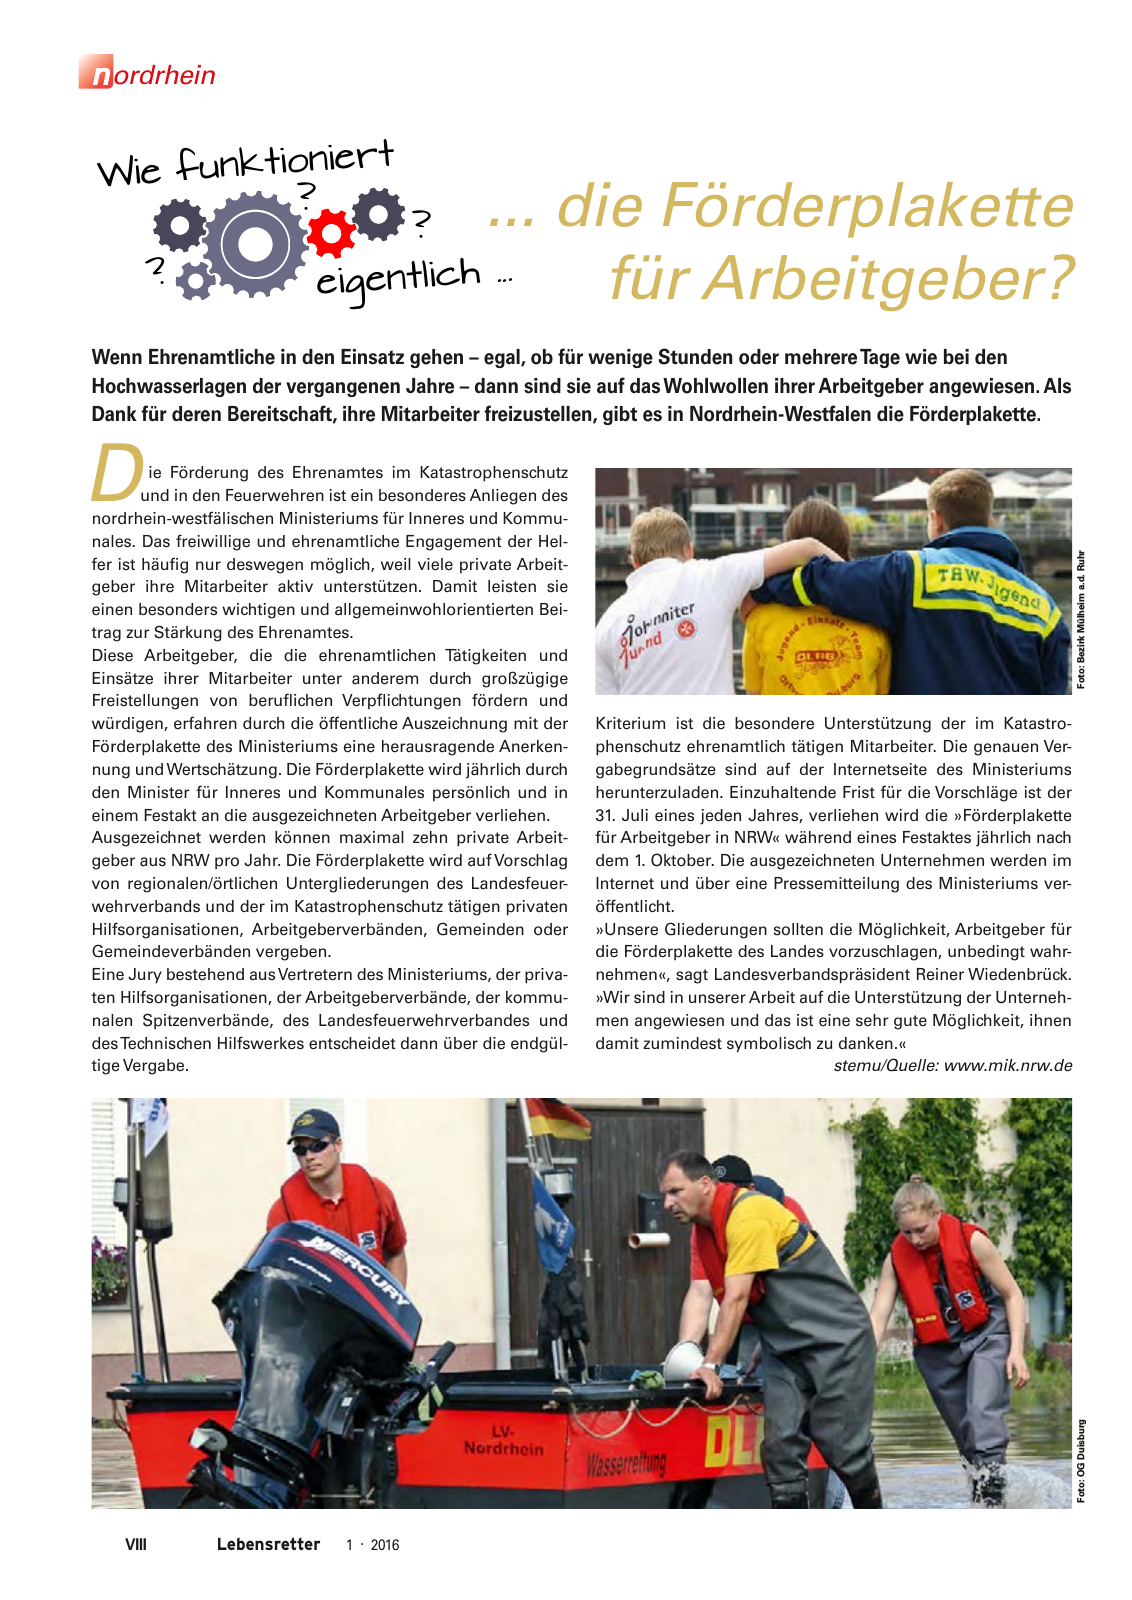 Vorschau Lebensretter 1/2016 - Regionalausgabe Nordrhein Seite 10